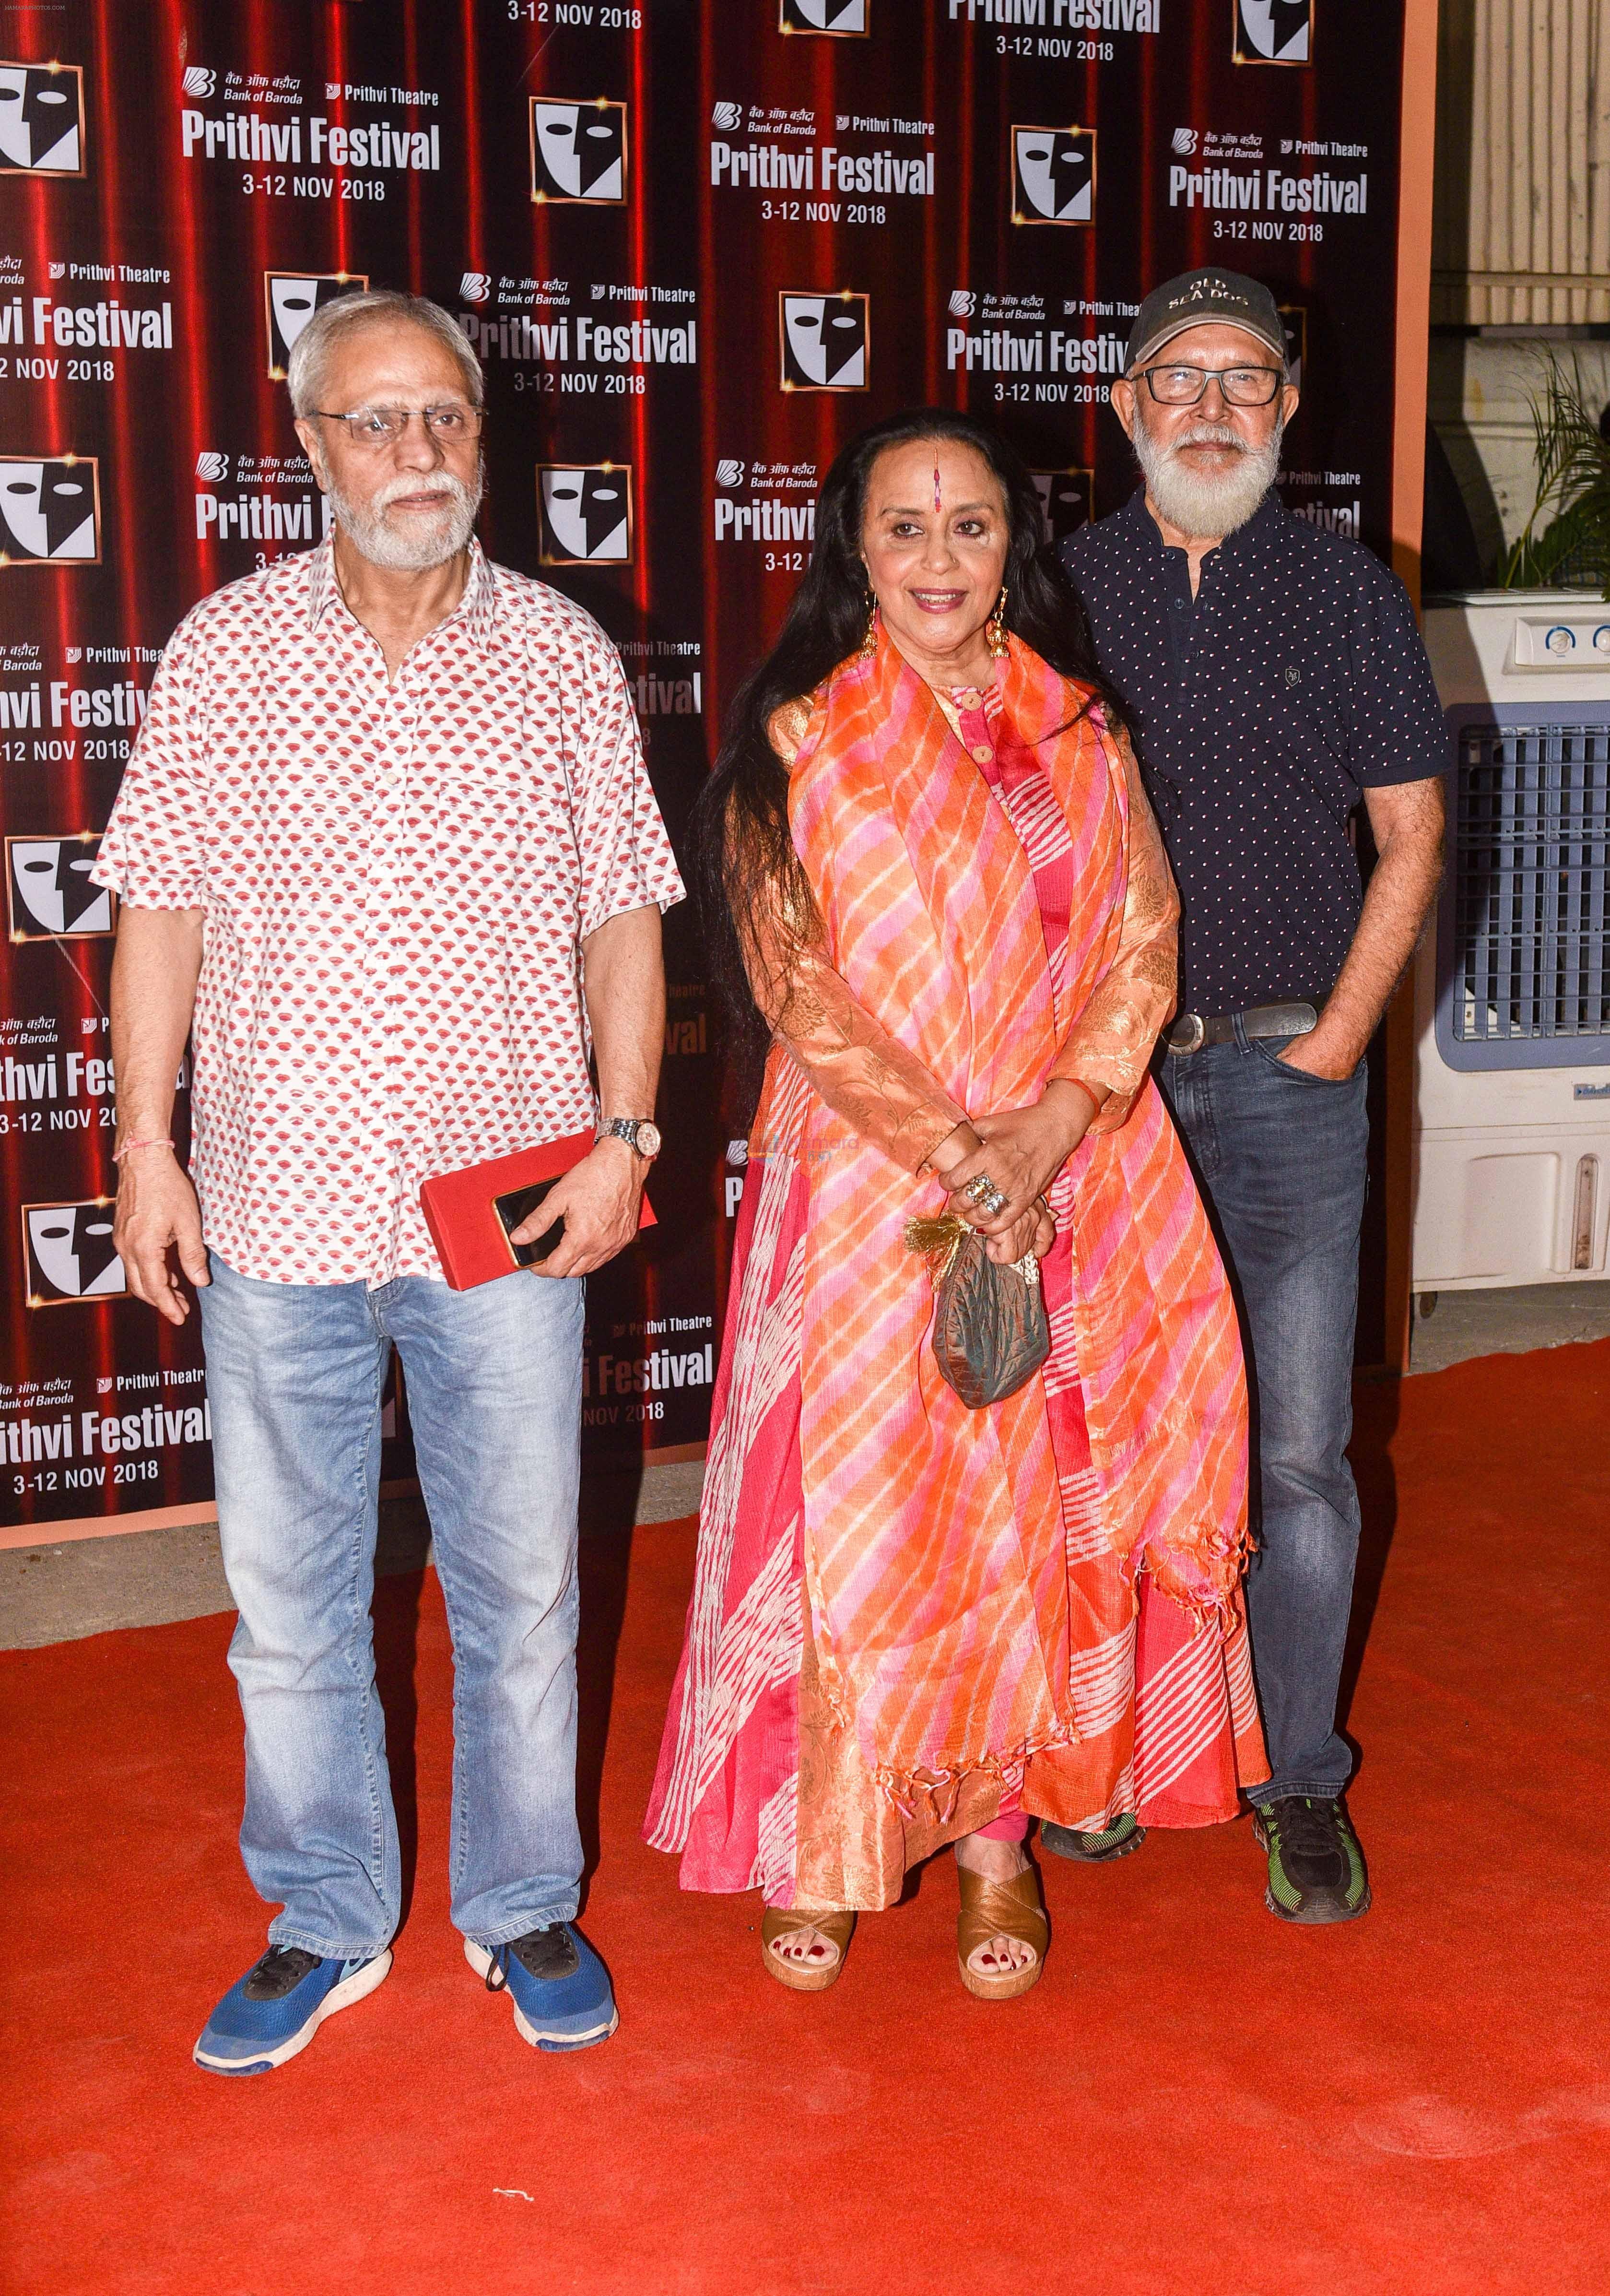 Ila Arun at the inauguration of Mumbai_ iconic Prithivi theatre festival on 4th Nov 2018